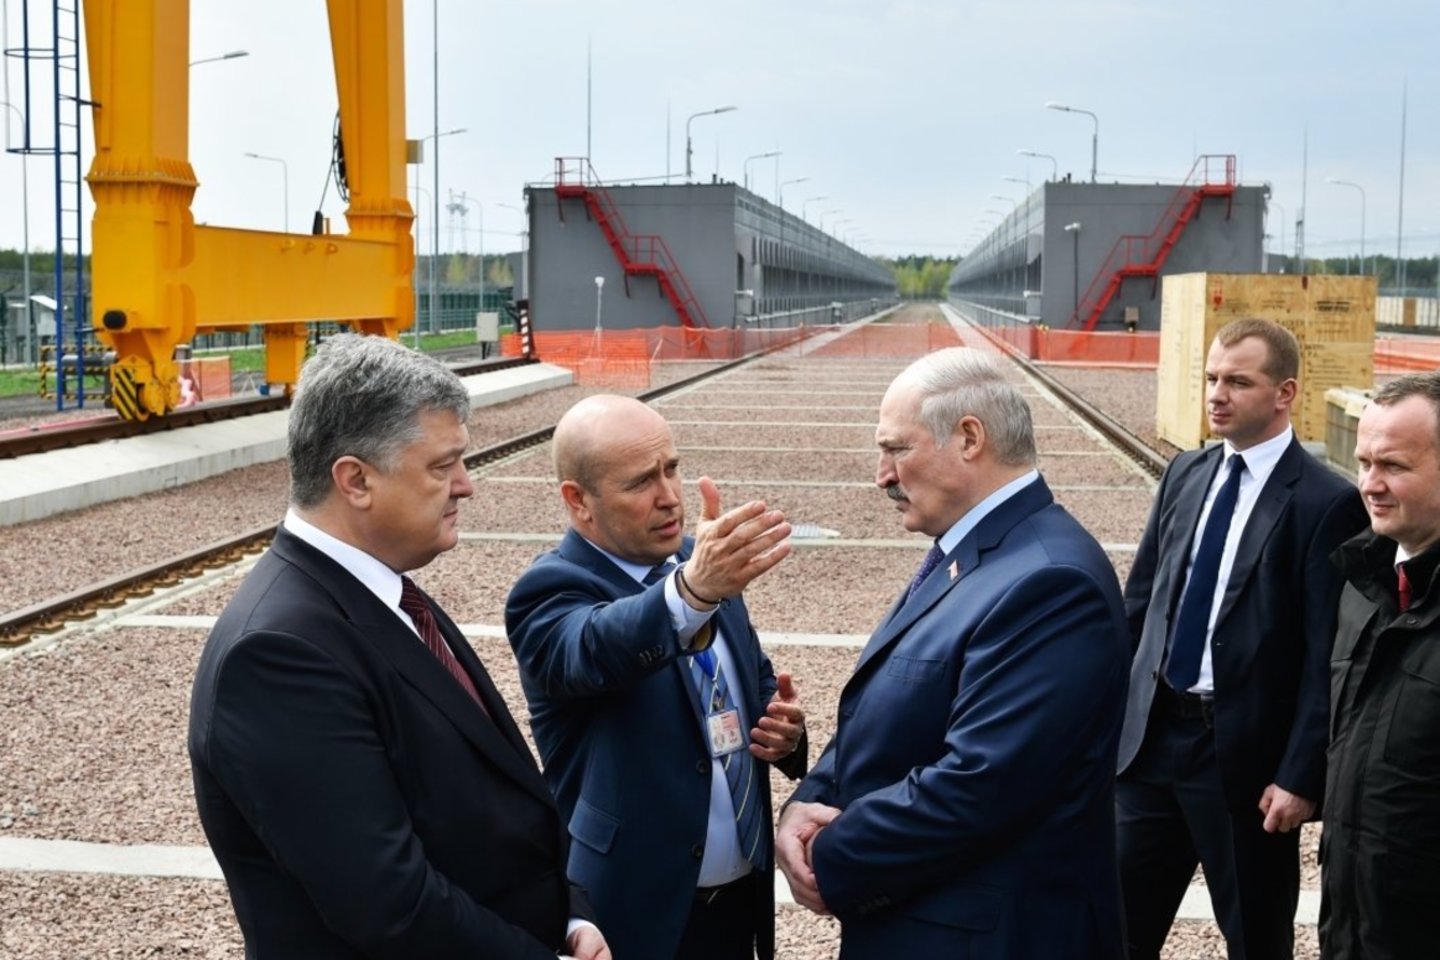  2017 metų balandžio 26 diena. Černobylio AE teritorijoje. Centre – dabartinis AE direktorius Igoris Gramotkinas. Kairėje – Ukrainos prezidentas Petro Porošenko, dešinėje – Baltarusijos prezidentas Aliaksandras Lukašenka. <br> RIA Novosti nuotr,